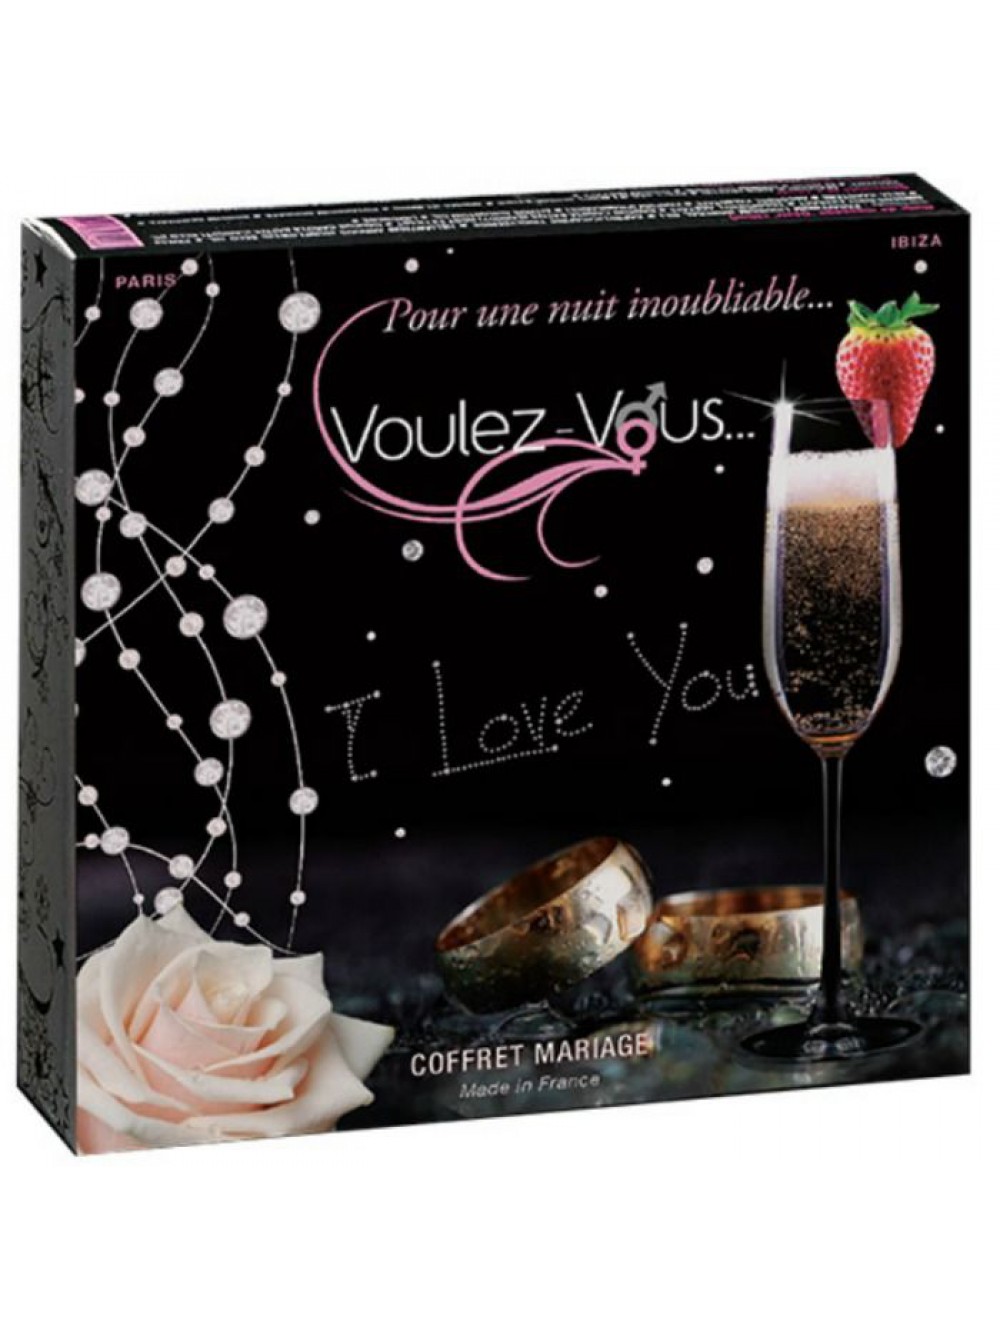 VOULEZ-VOUS WEDDING BOX